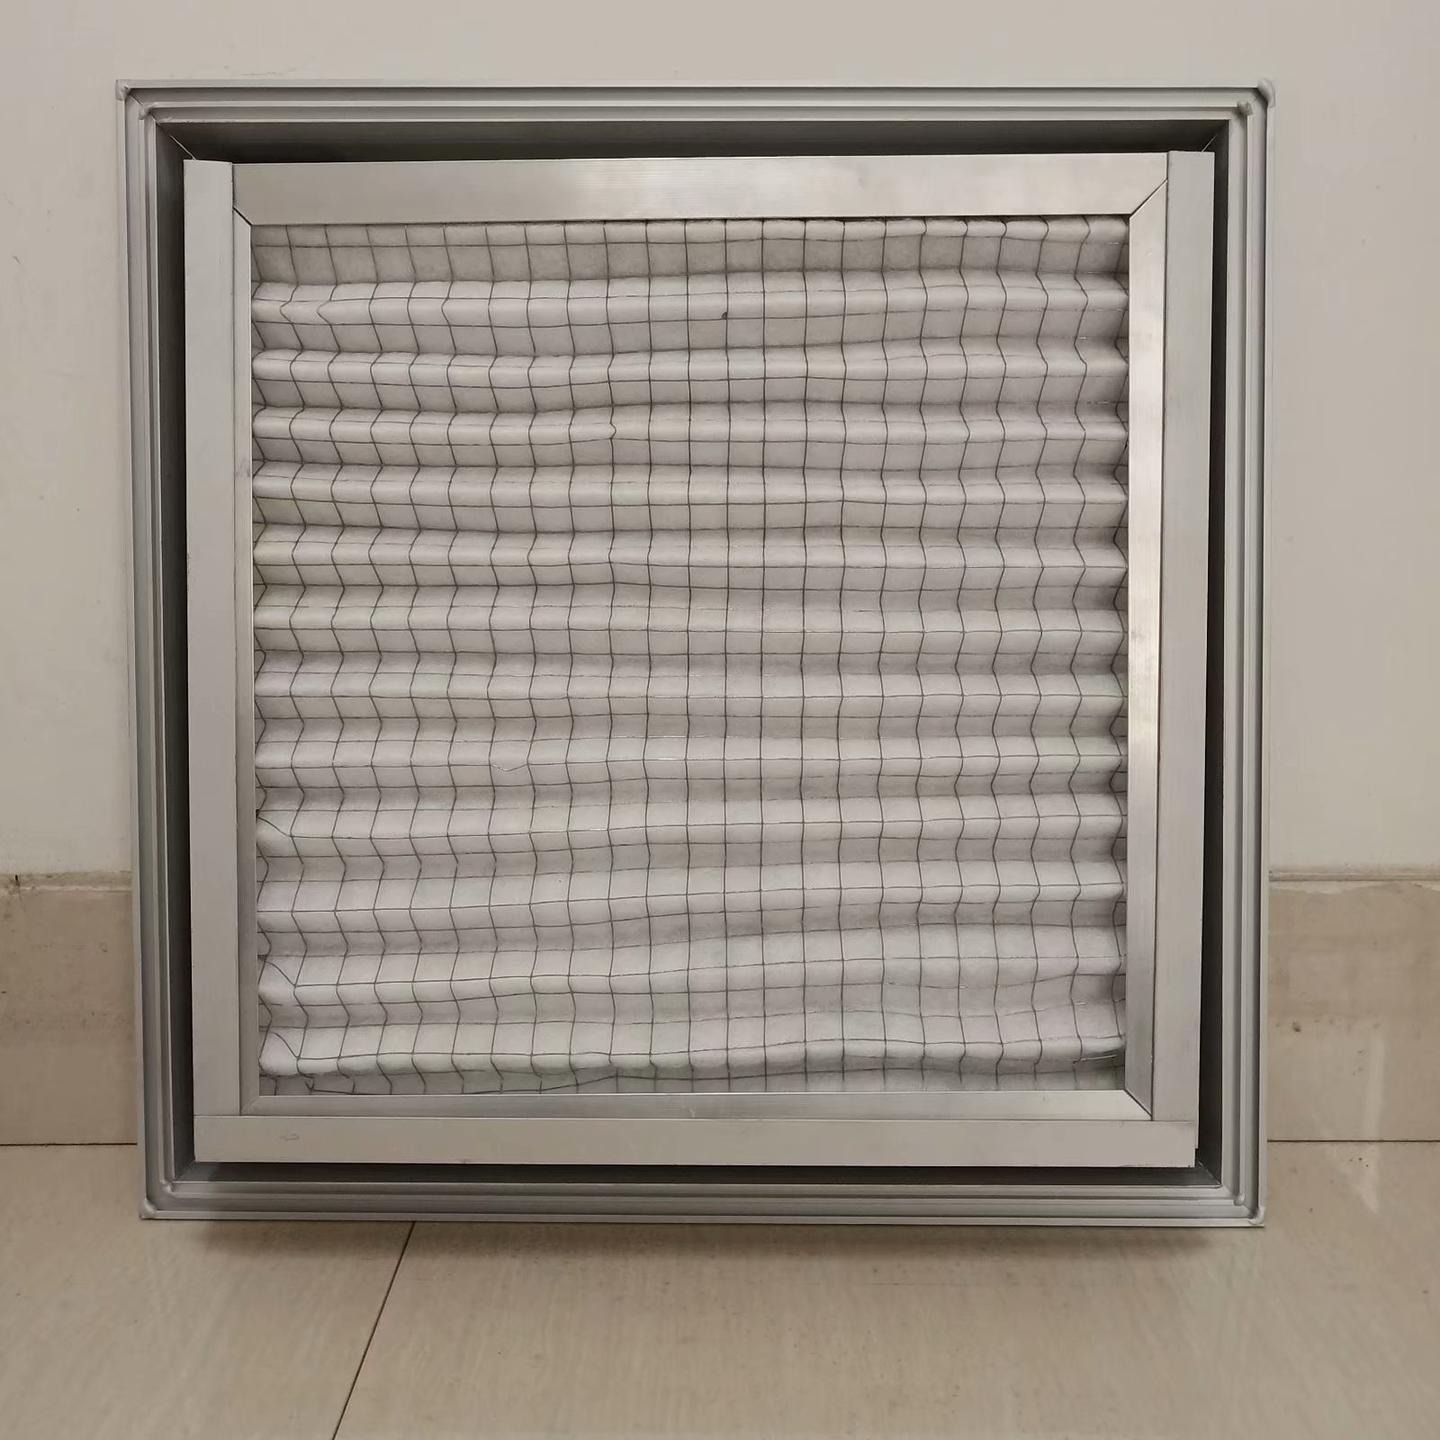 铝合金百叶窗   可开式铝合金百叶  广泛用于集装箱通风   电器柜散热  带初效过滤更好的净化空气